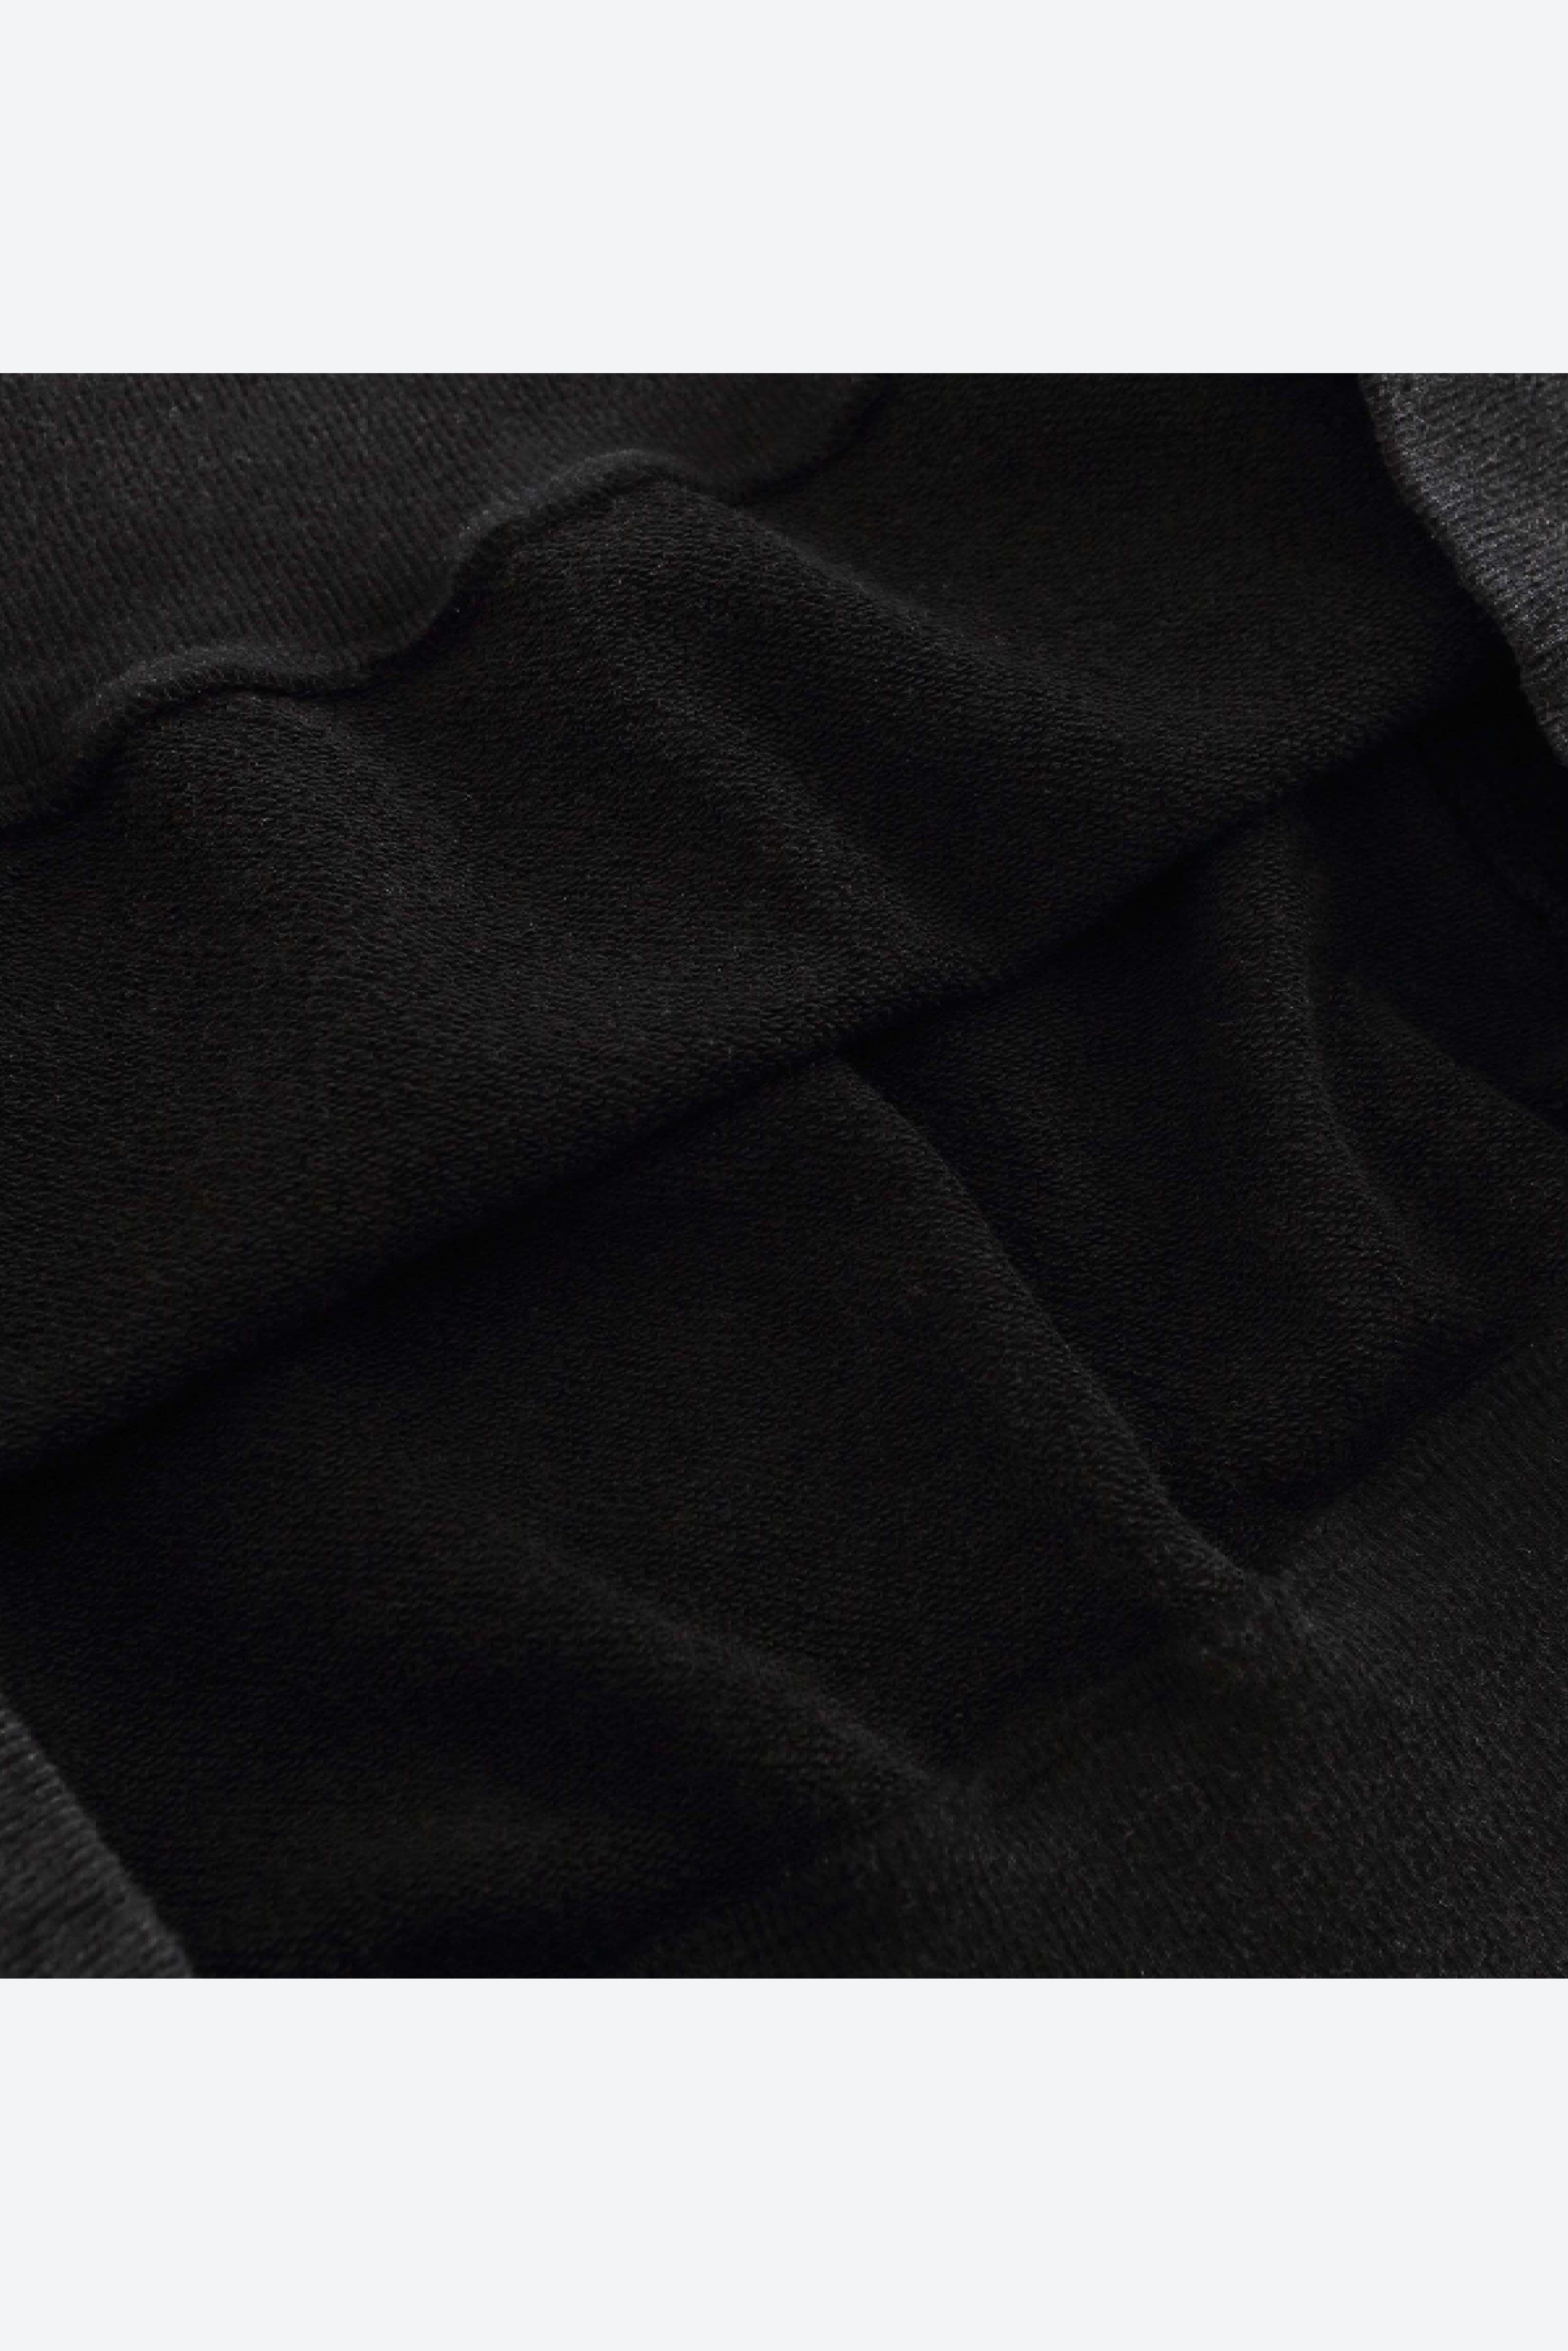 VAMPURR CAT - Washed Black